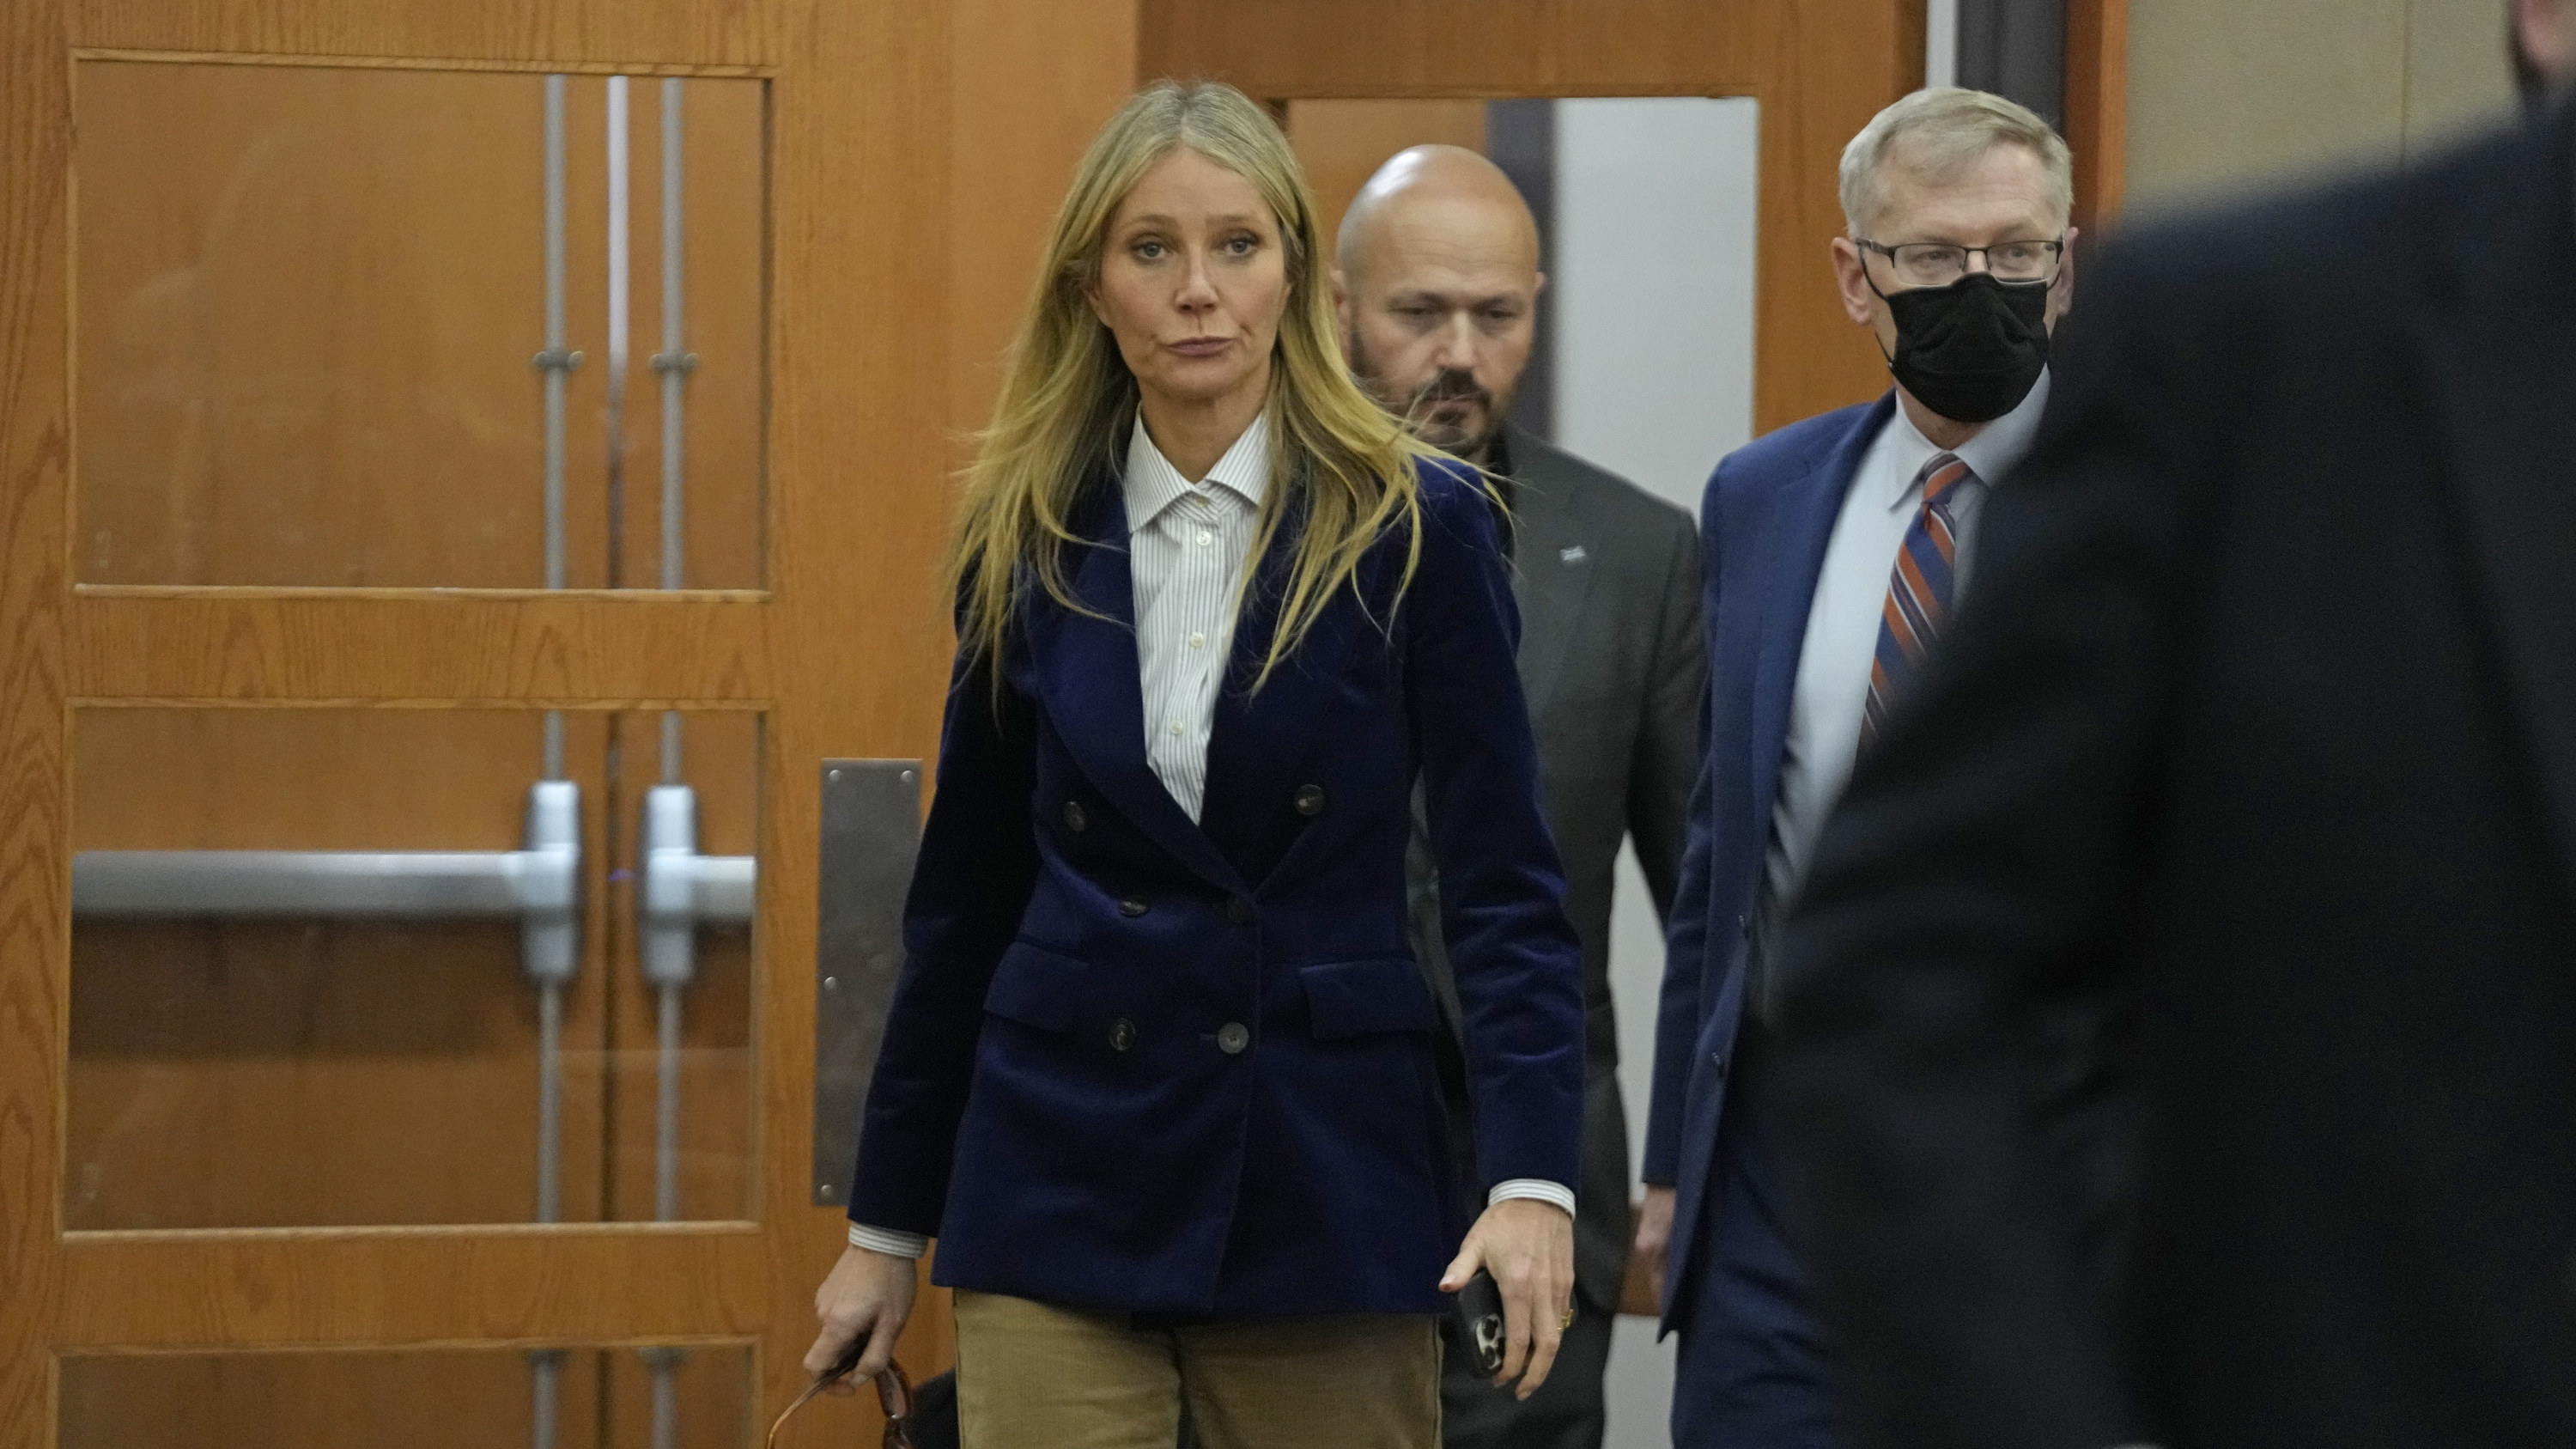 Gwyneth walking in the courtroom